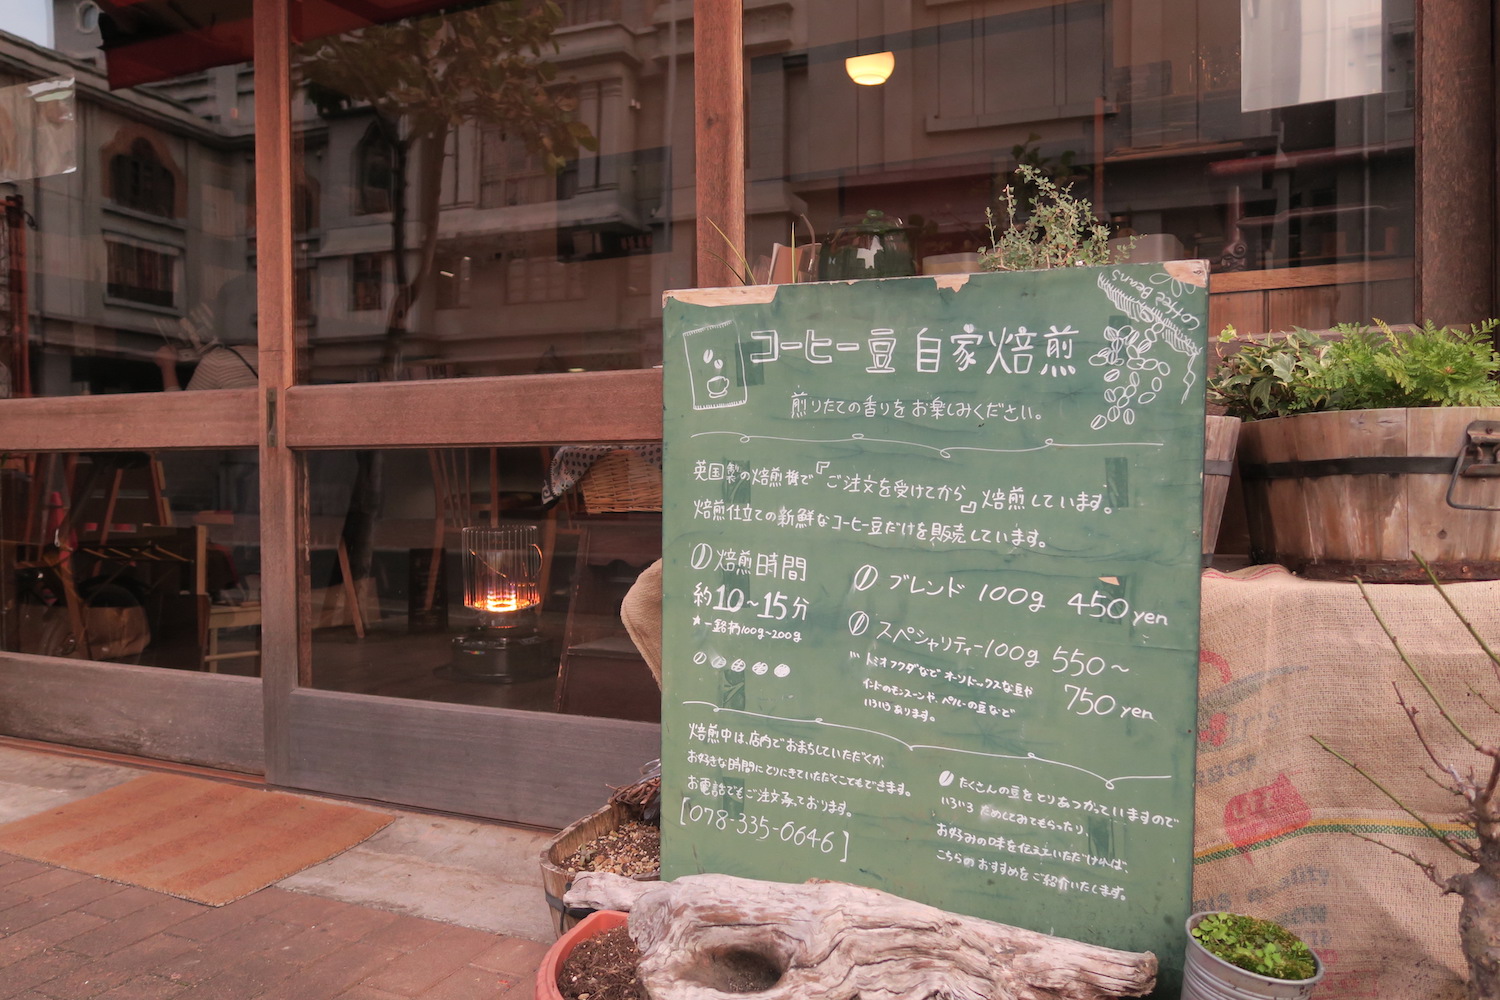 神戸の自家焙煎カフェ「すいらて」の看板(焙煎)の写真